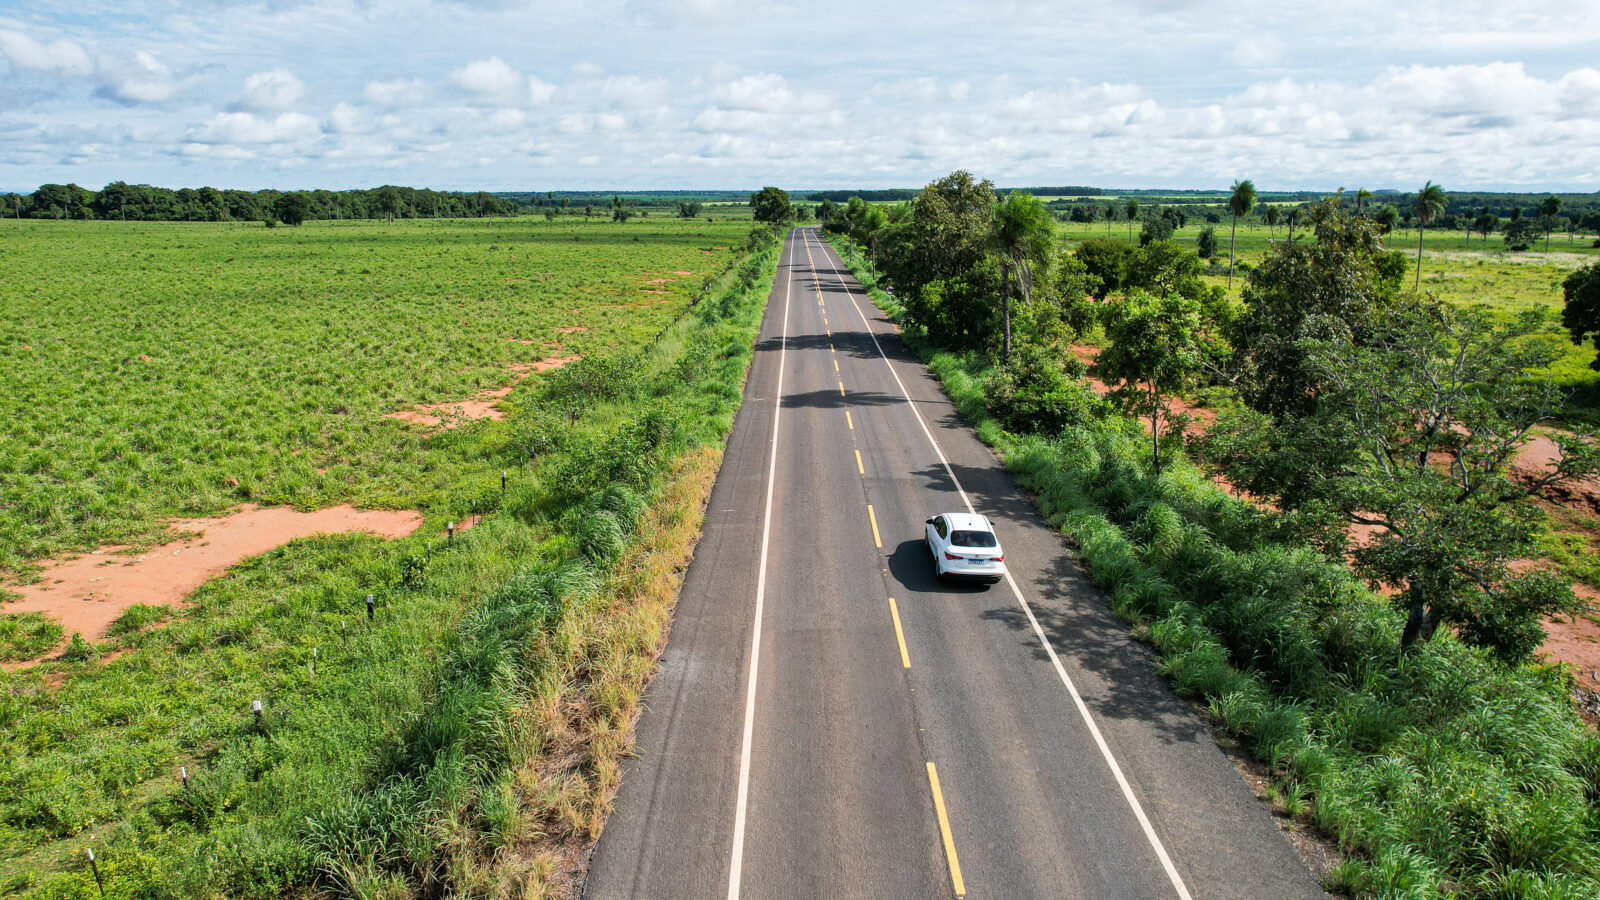 Foram recuperados 73,2 km da MT-060, a principal rota de acesso ao Pantanal              Crédito - Antônio Pinheiro/ Secom-MT